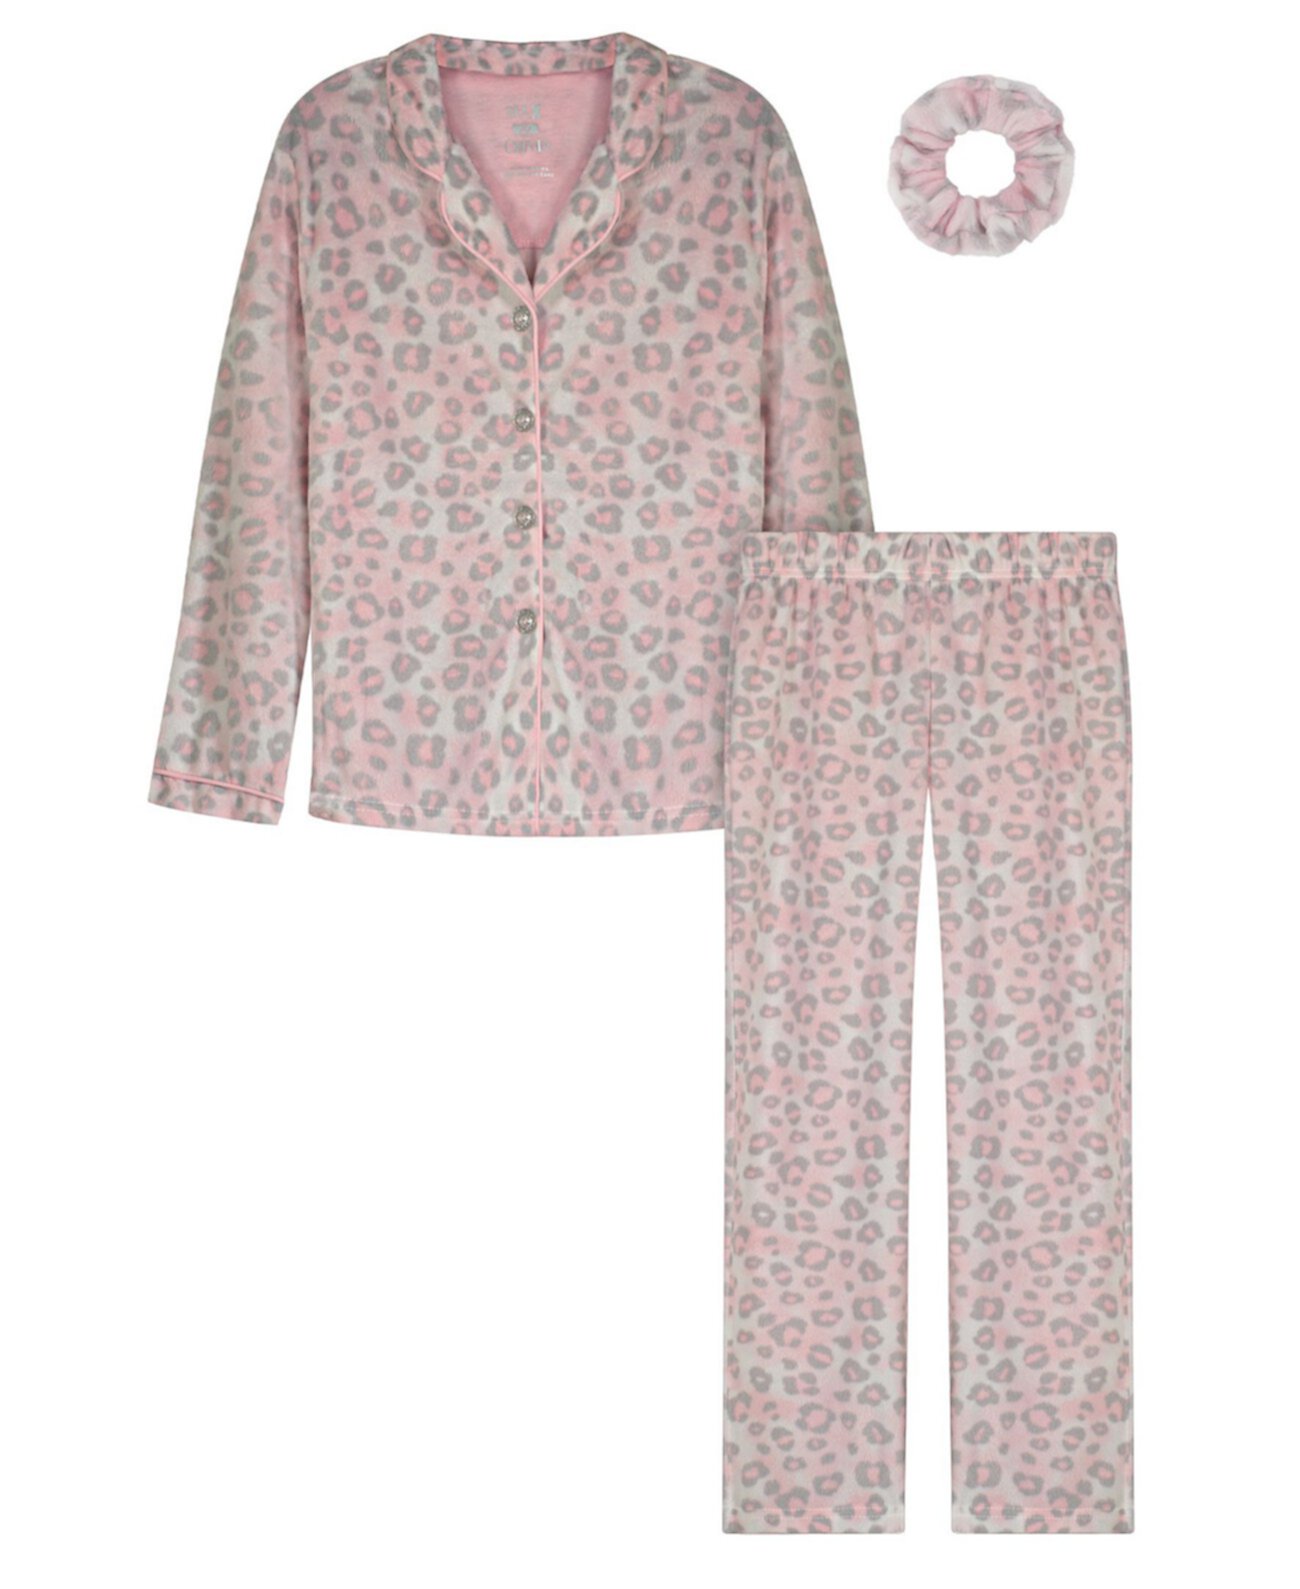 Пижама в стиле пальто для больших девочек с резинкой для волос, комплект из 3 предметов Sleep On It